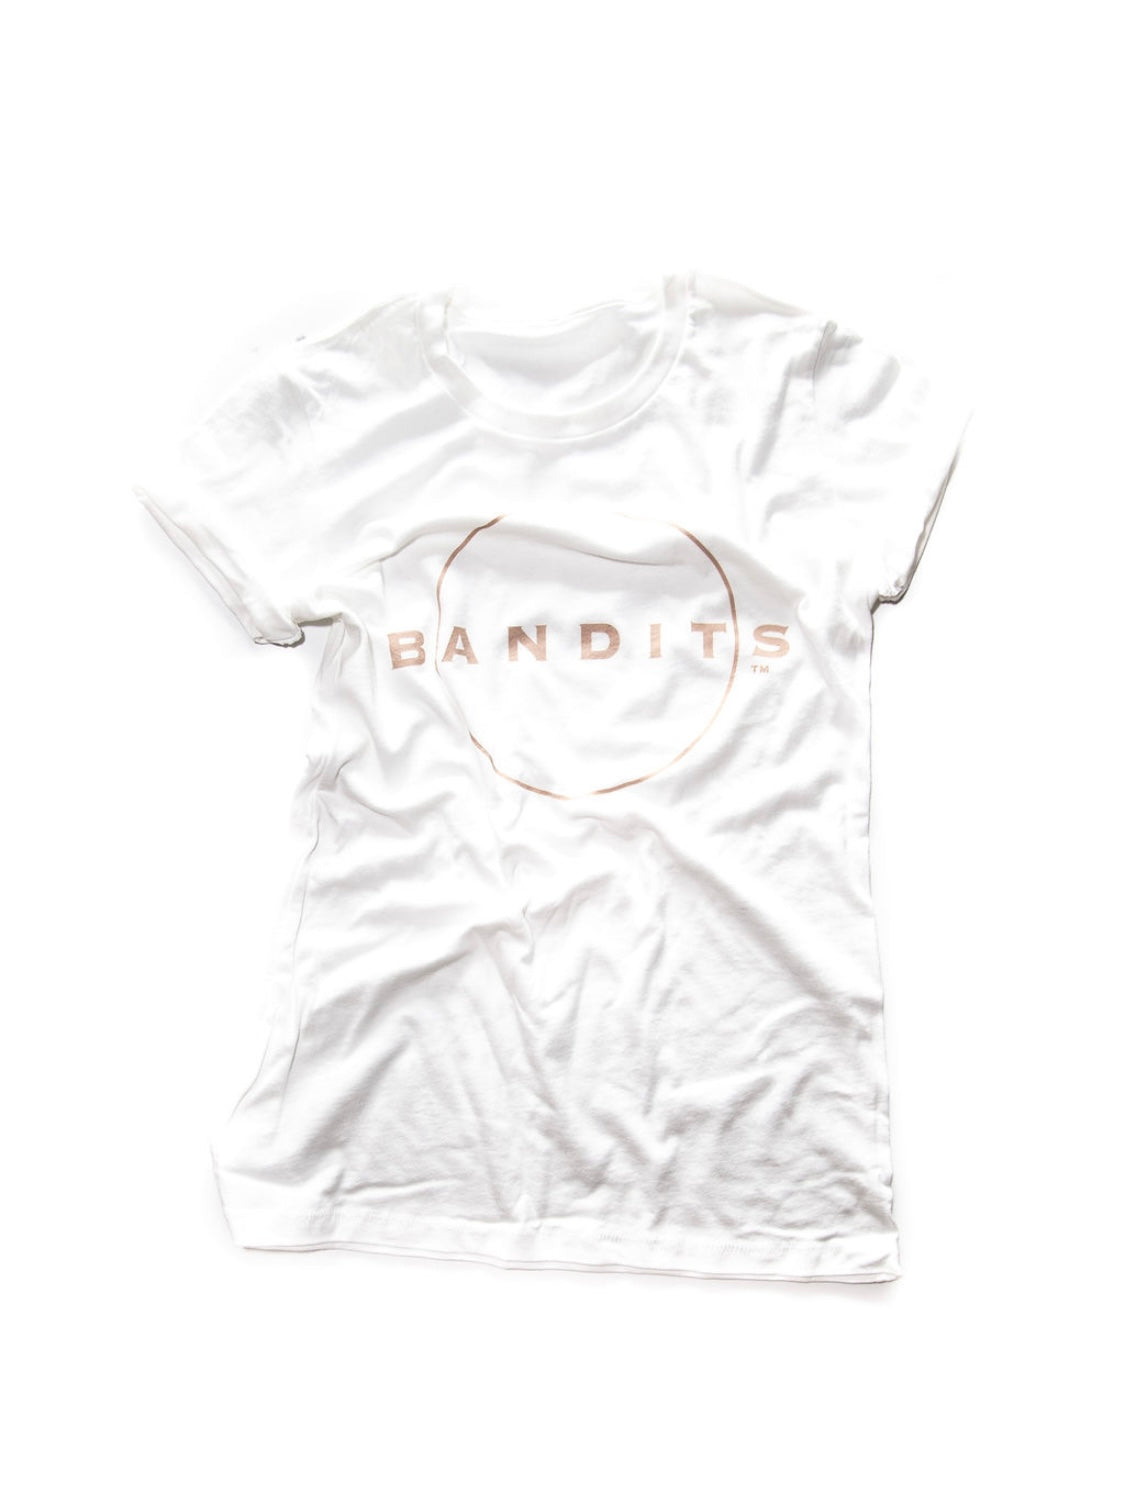 Bandits Classic T - White